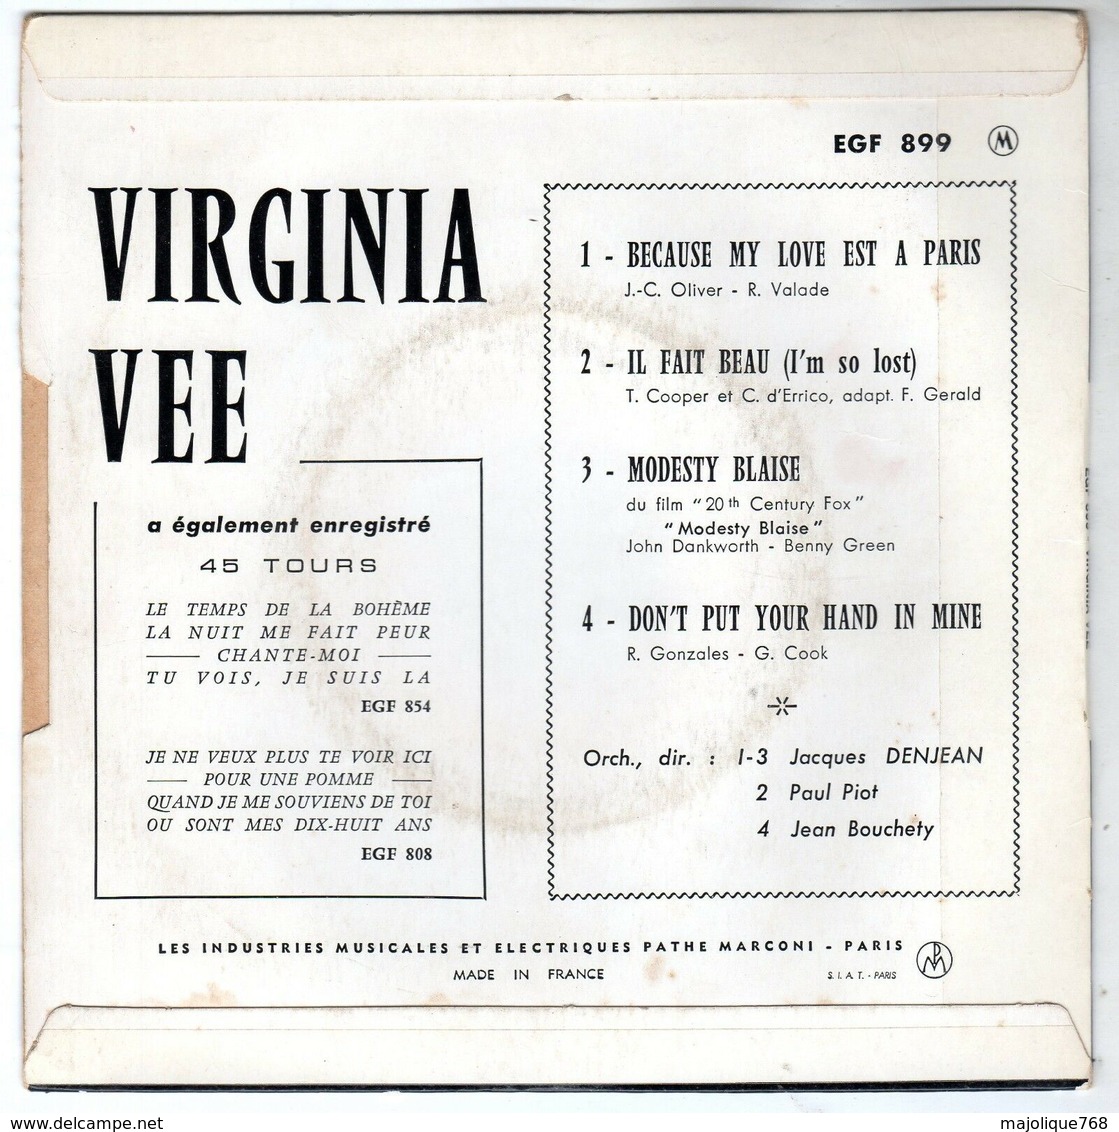 Virginia Vee - Because My Love Est A Paris - Pathé EGF 899 - 1966 - Soul - R&B